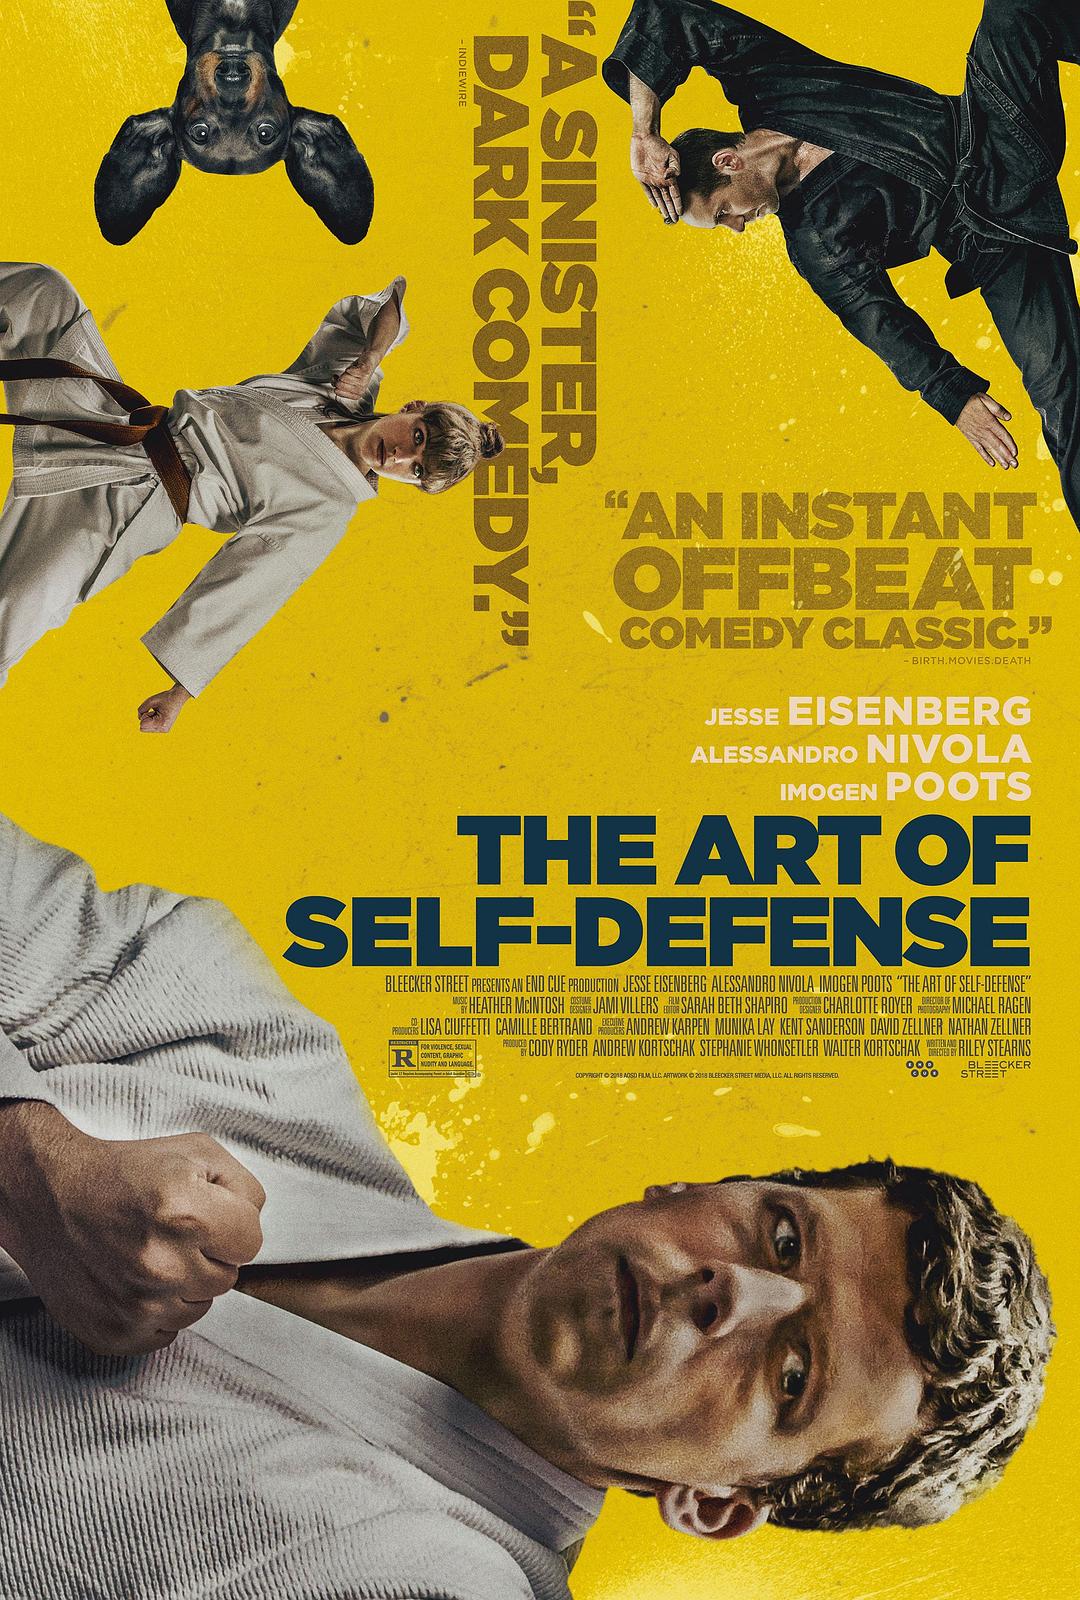 自卫的艺术.The.Art.of.Self-Defense.(2019).1080p.BluRay.REMUX-NOGRP 26.66GB